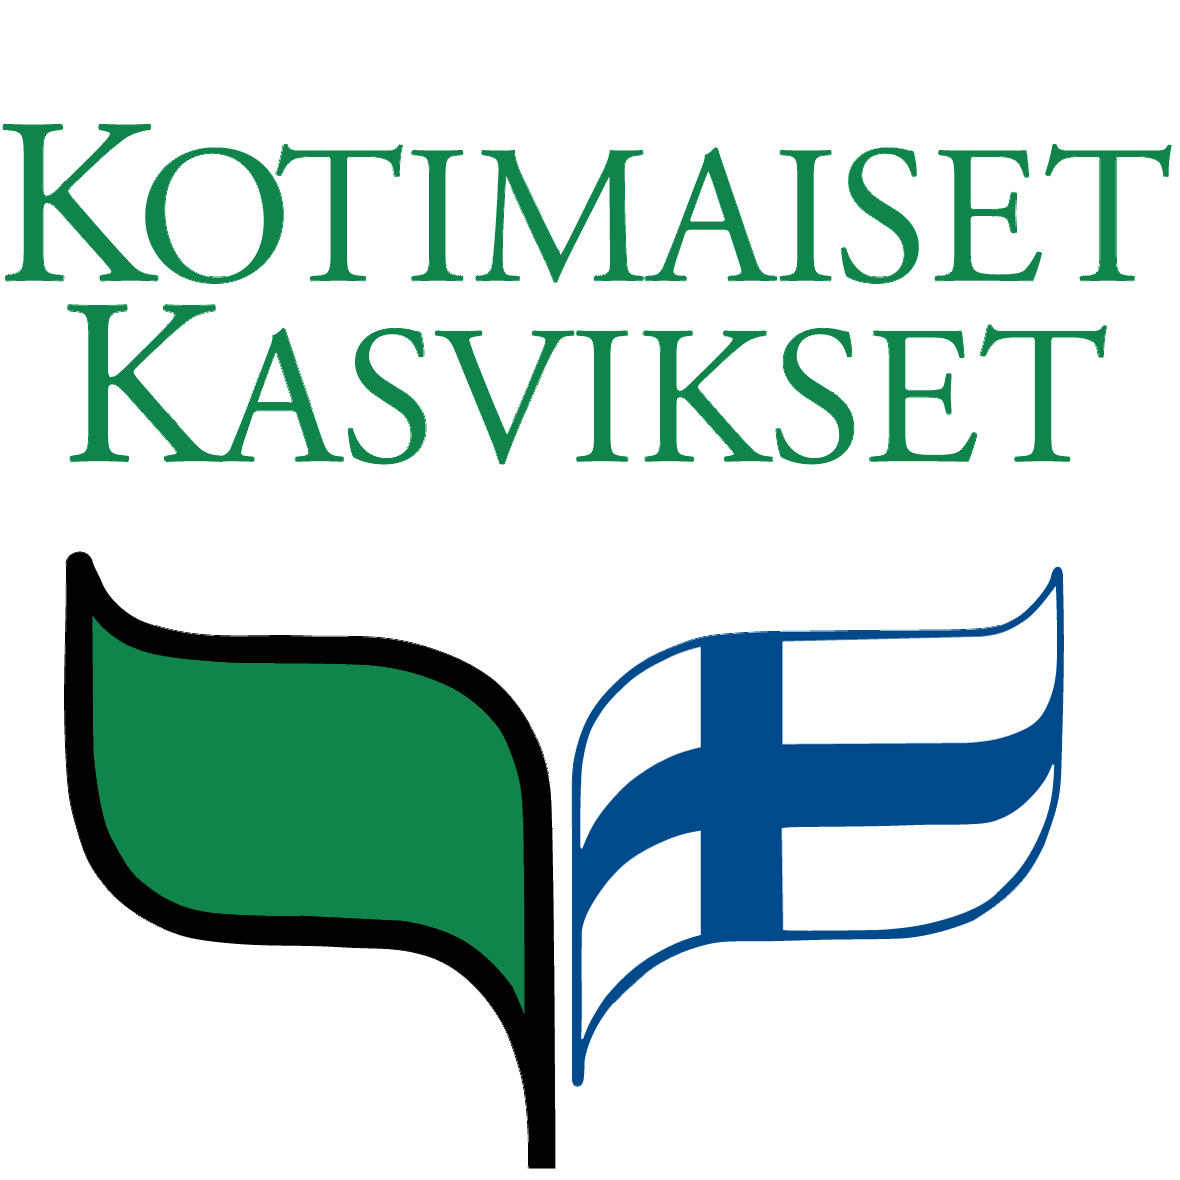 Kotimaiset kasvikset, logo